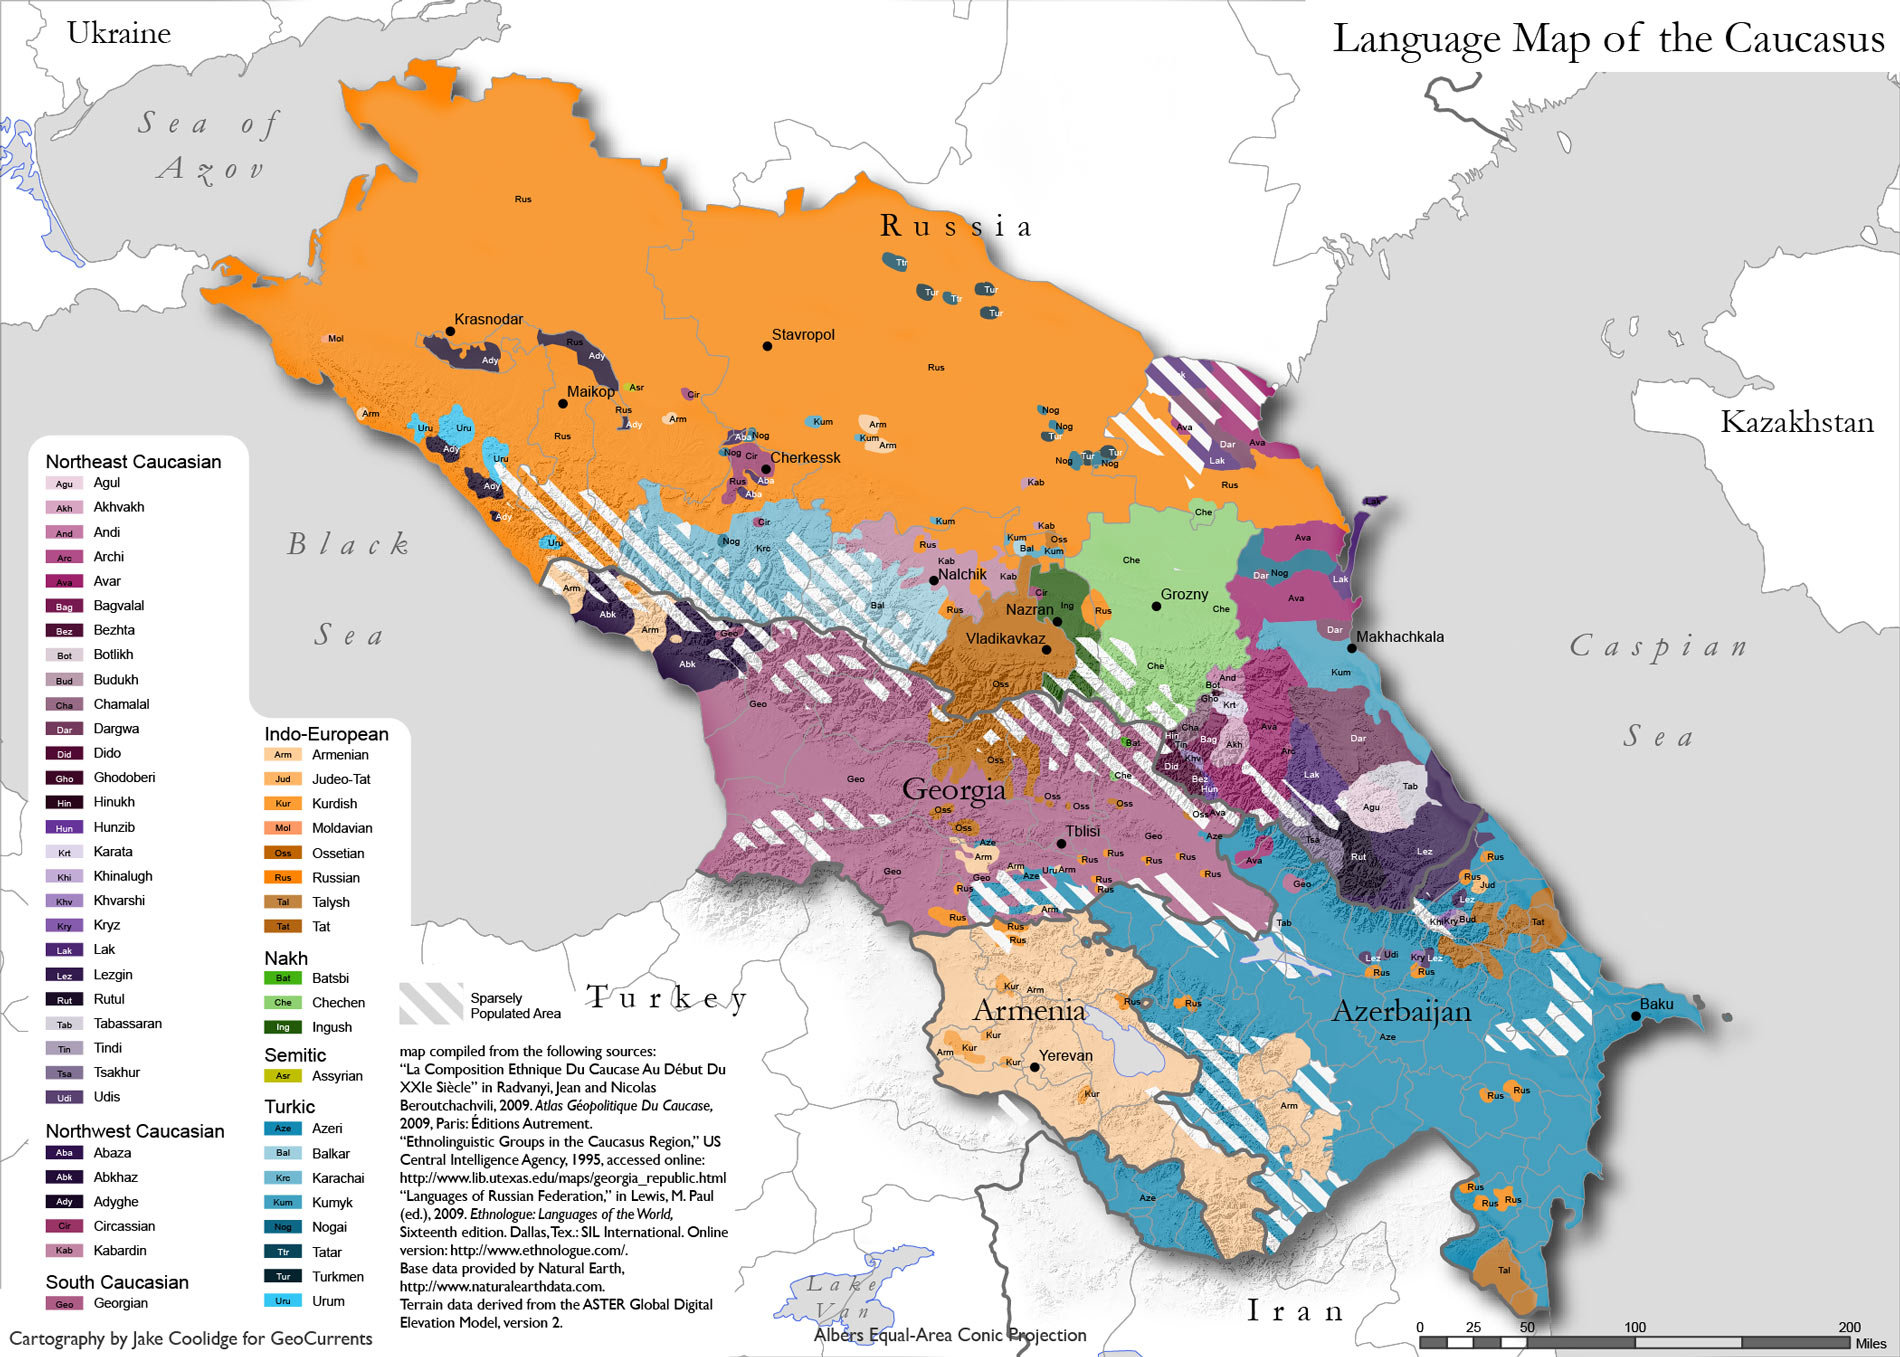 Mapa dos grupos etno-linguisticos da regiao do Caucaso